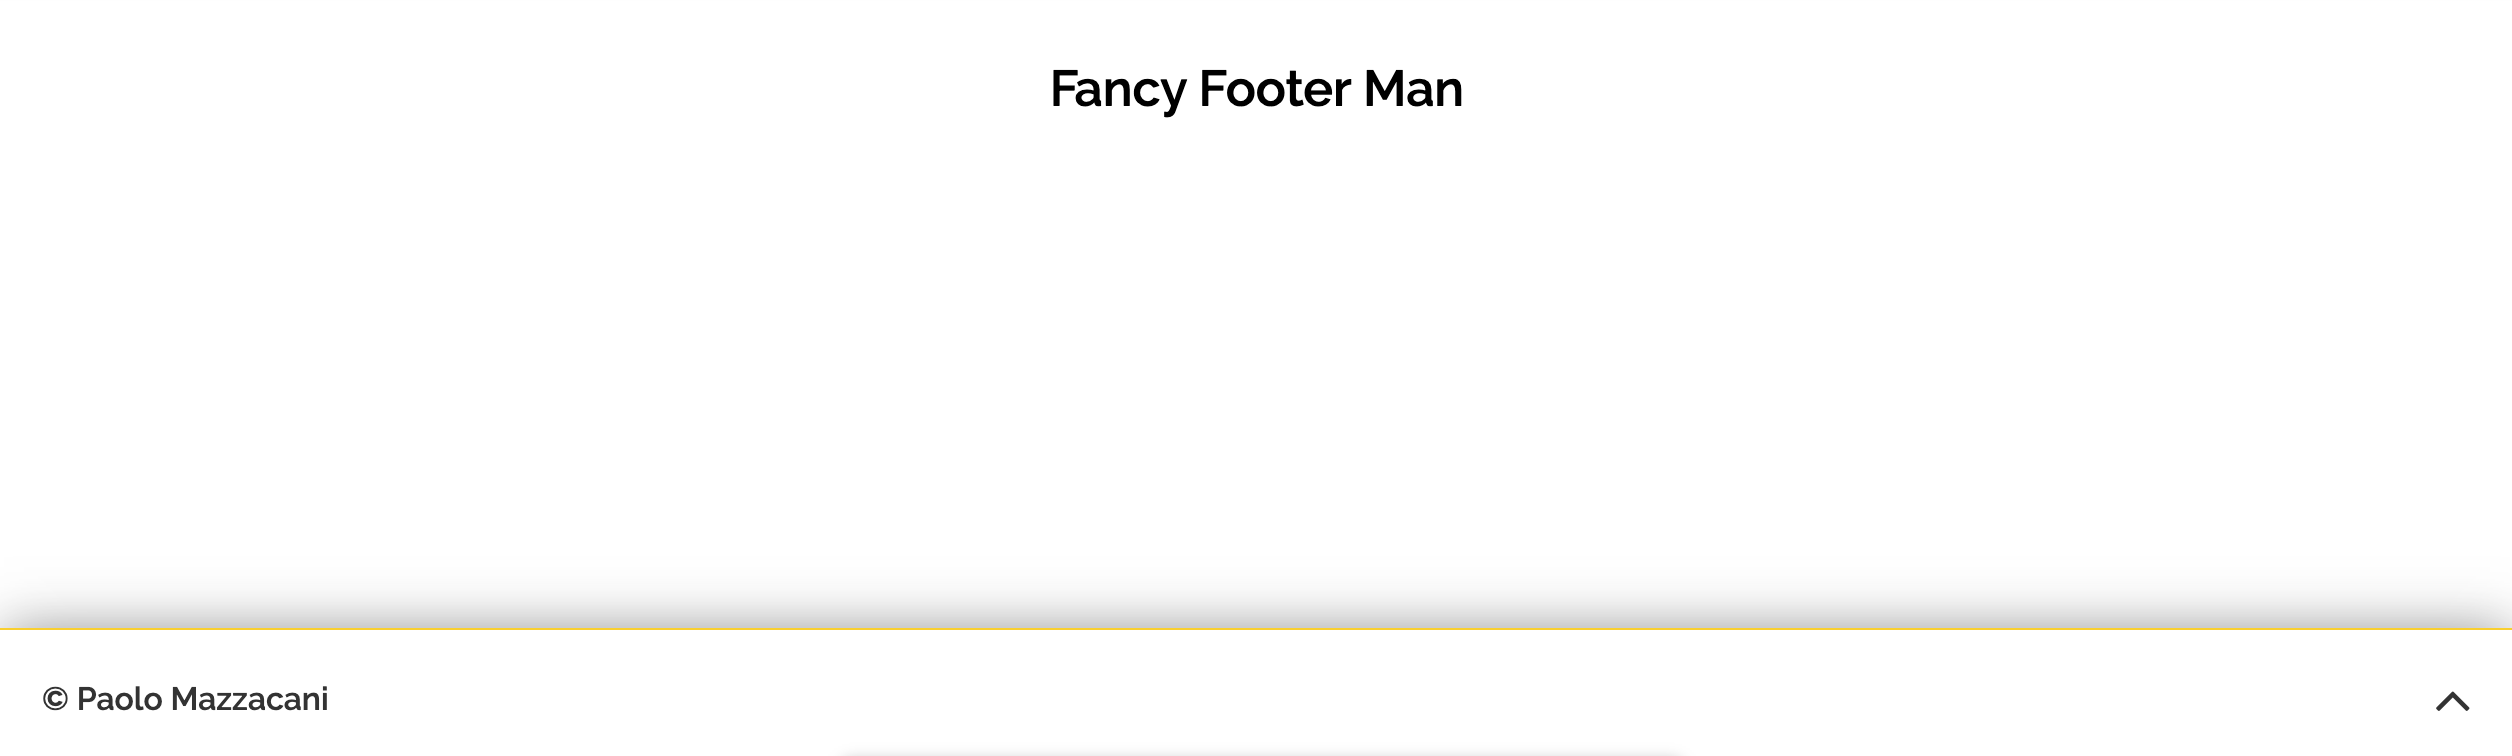 Fancy Footer